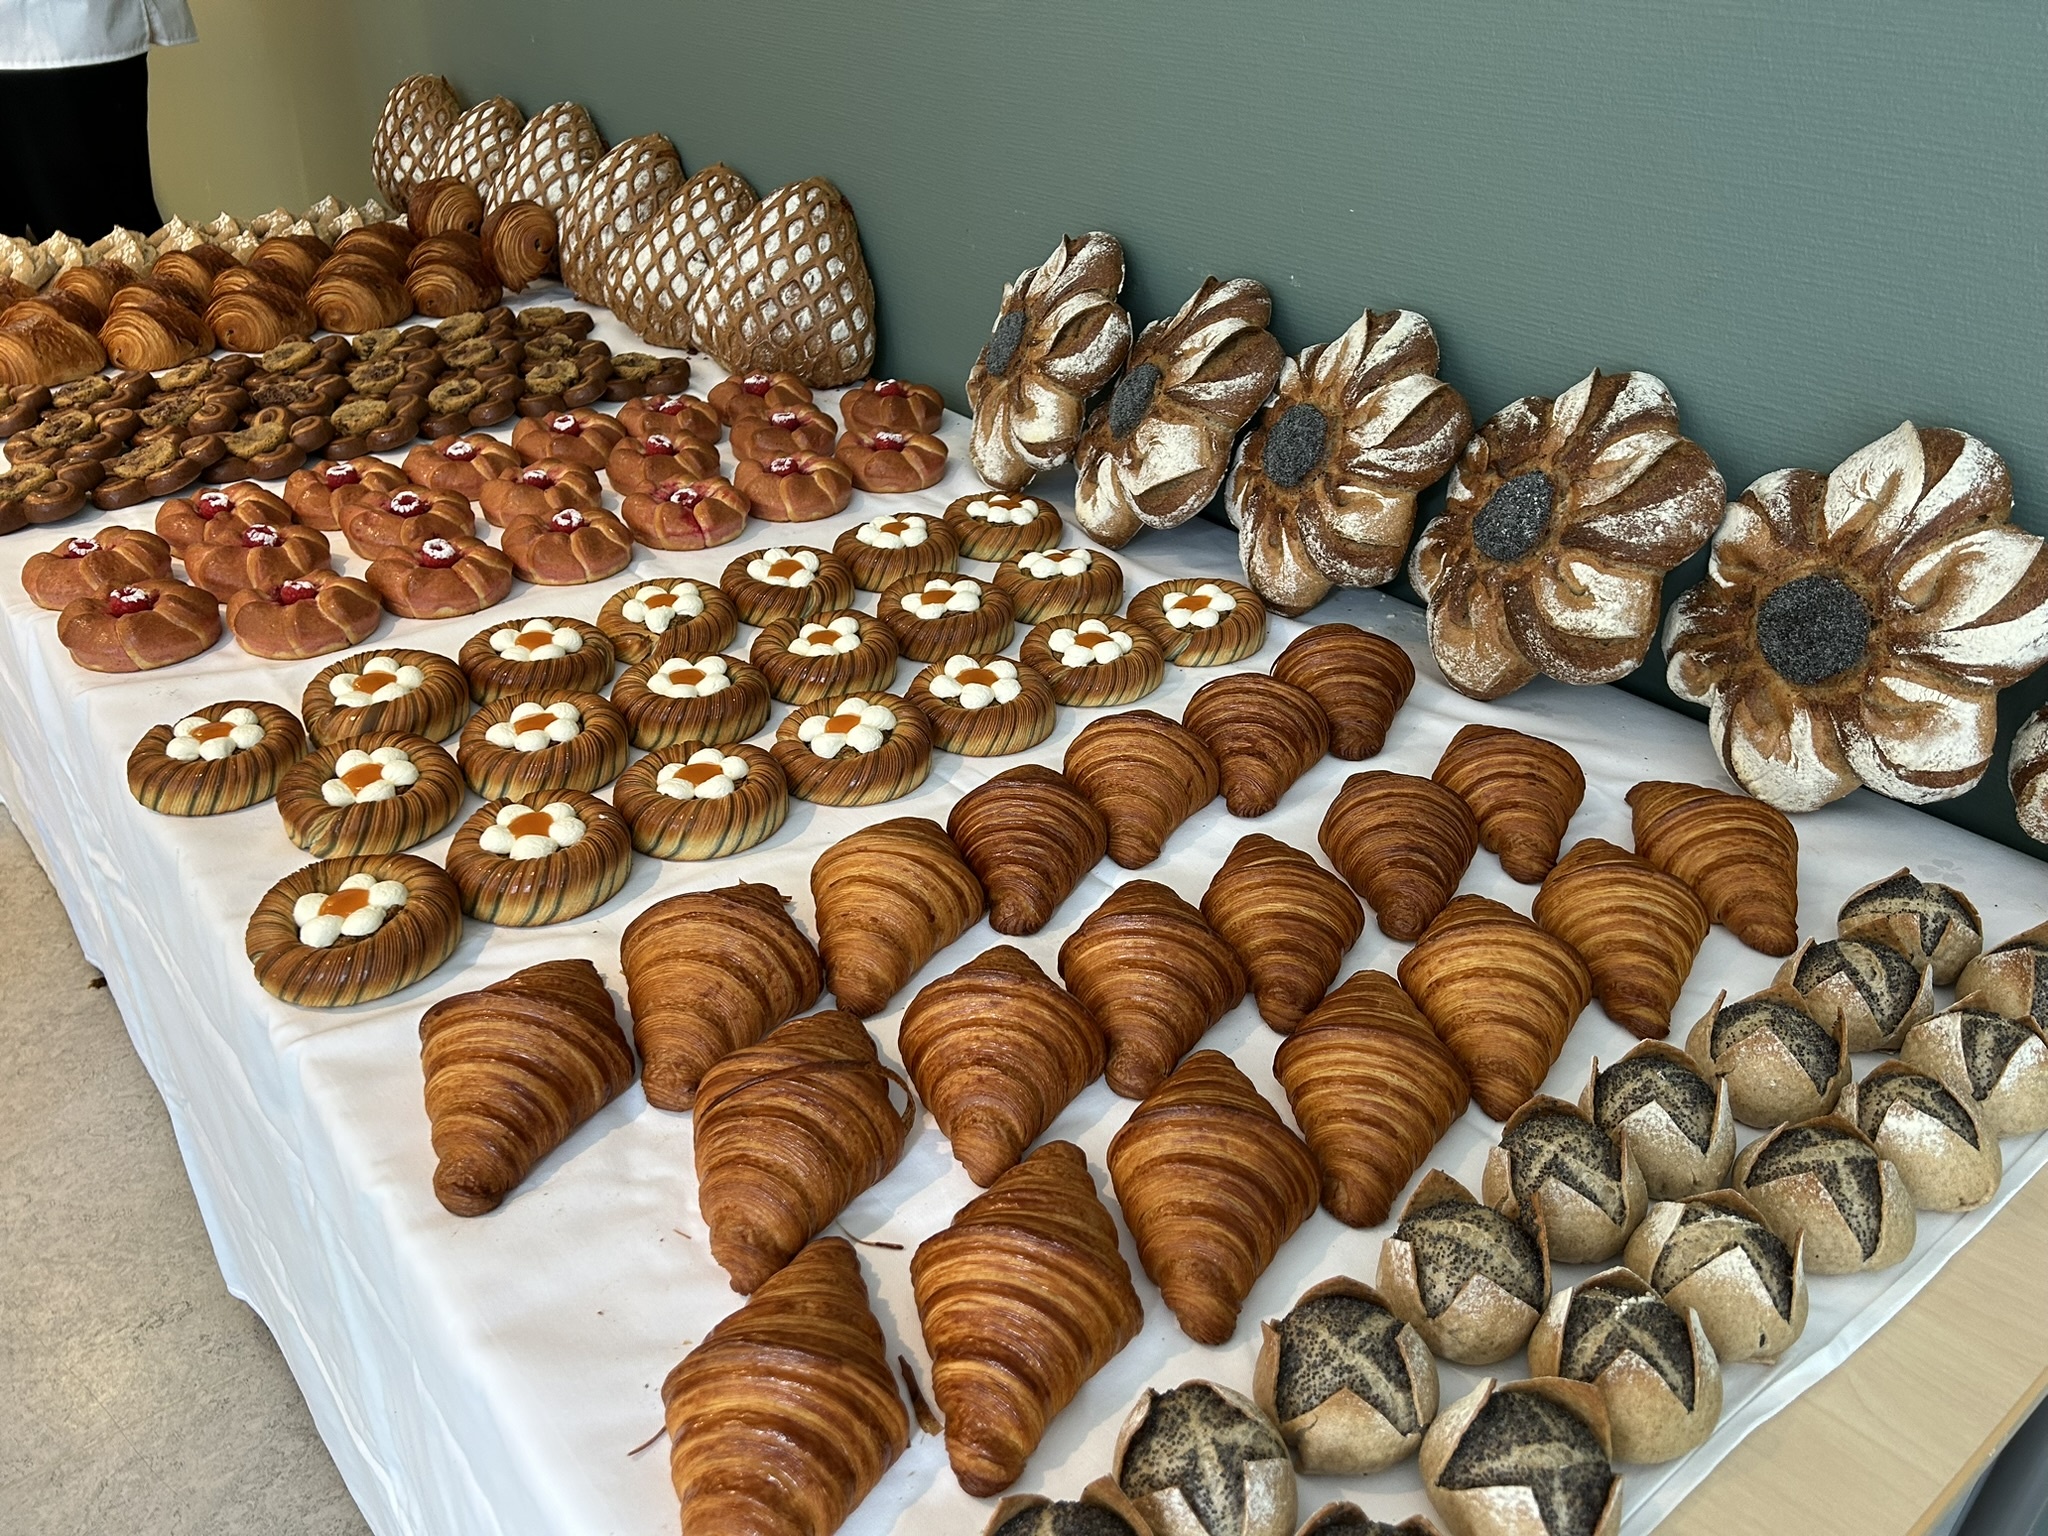 Produktene Philip Therkildsen leverte i konkurransen NM Årets Baker, ulike bakeriprodukter er oppstilt på et bord.